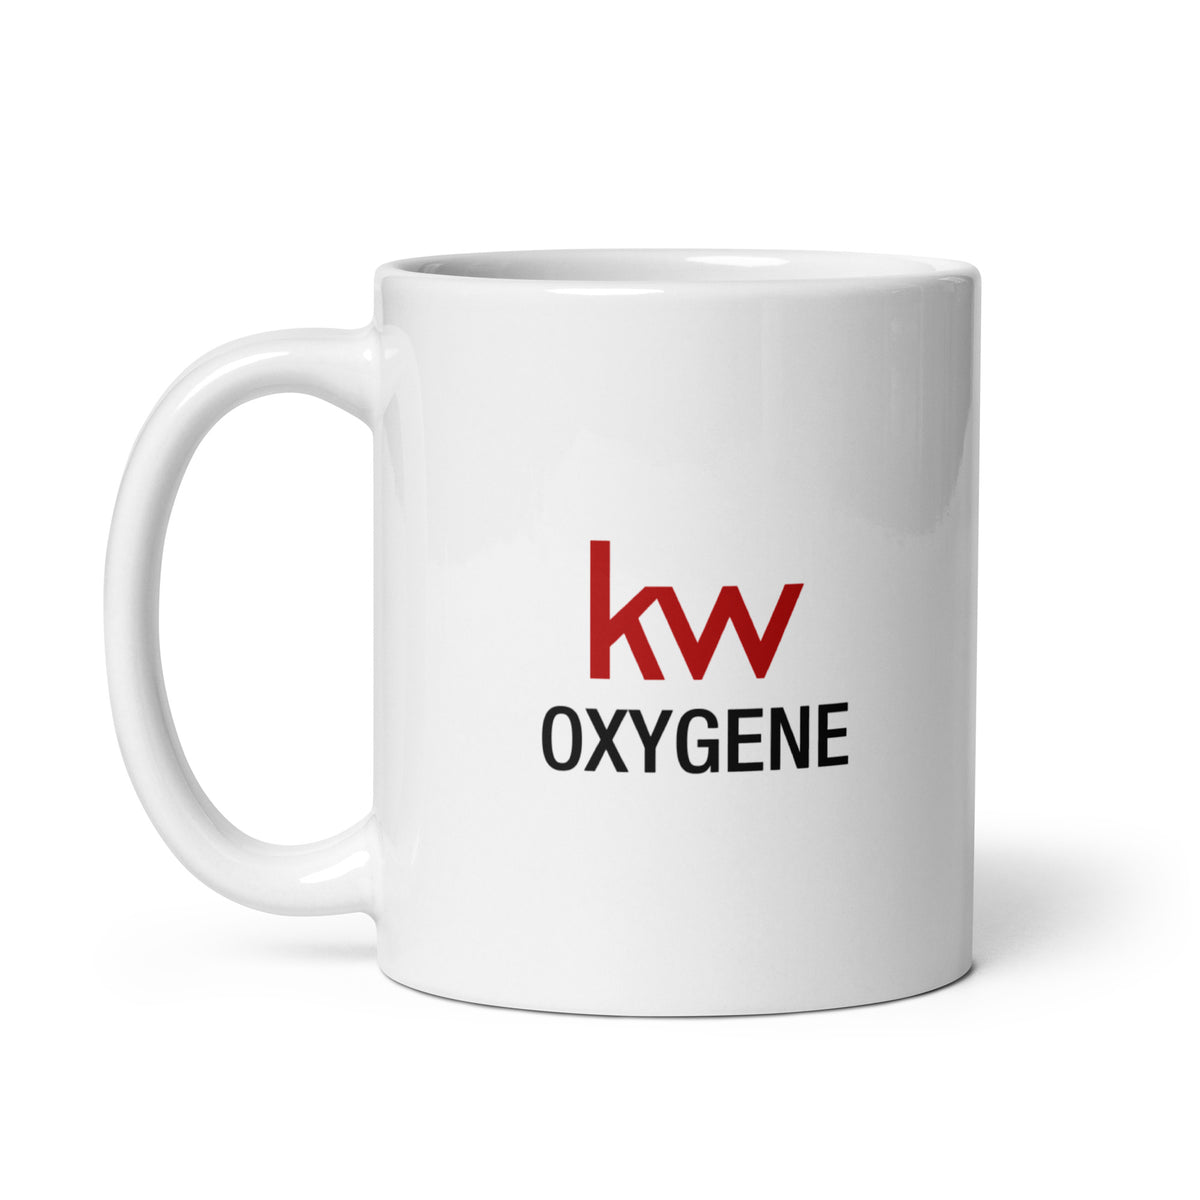 Mug - KW Oxygene